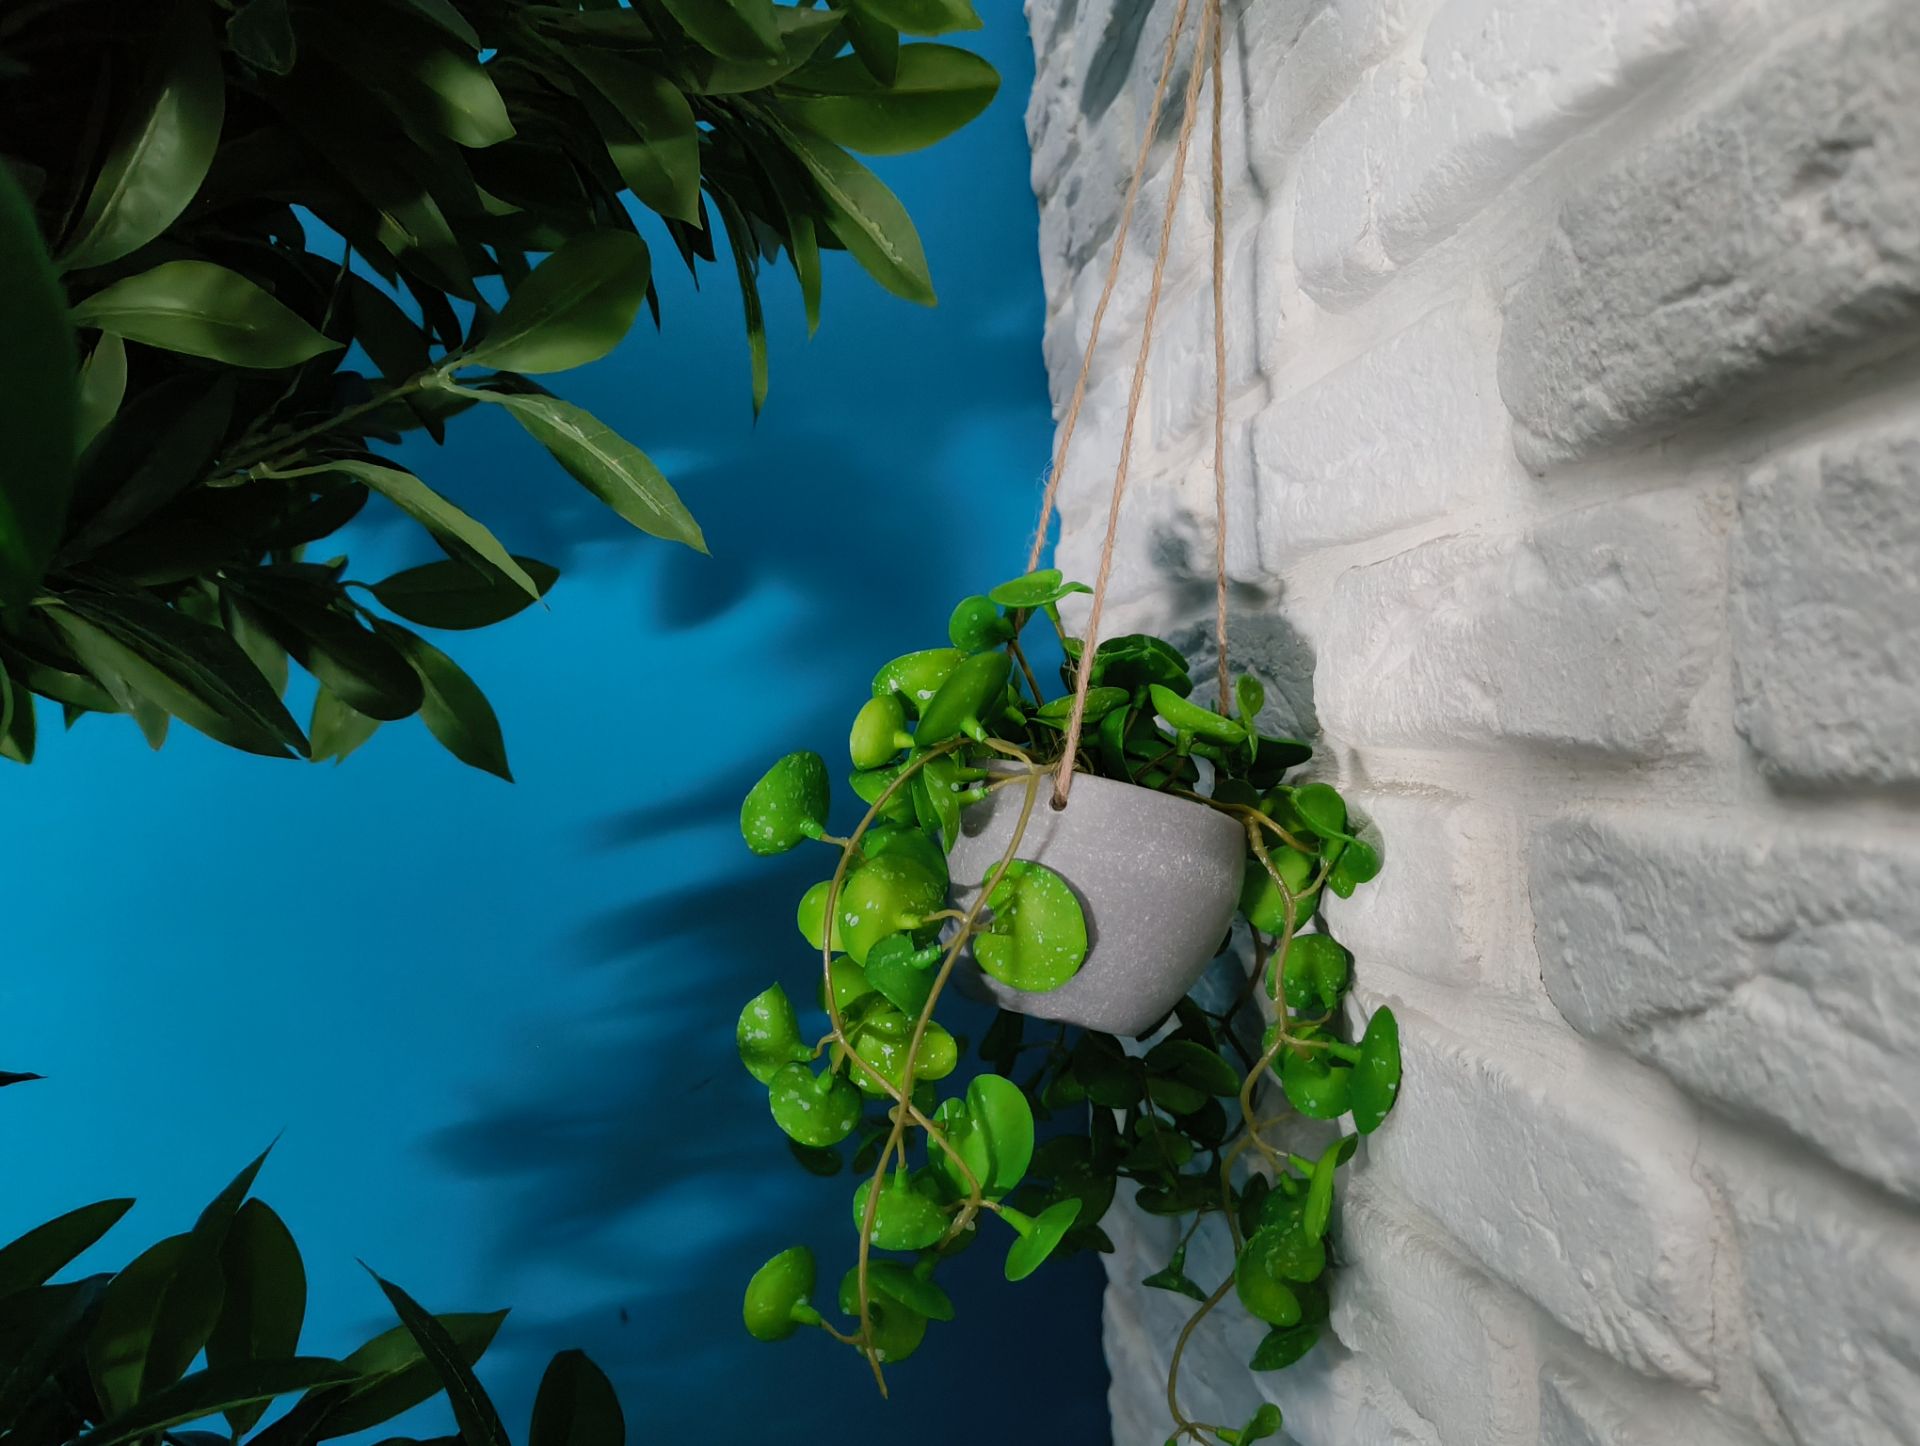 نمونه عکس ناتینگ فون 2a از یک گلدان با برگ‌های سبز آویزان از دیوار سفید رنگ